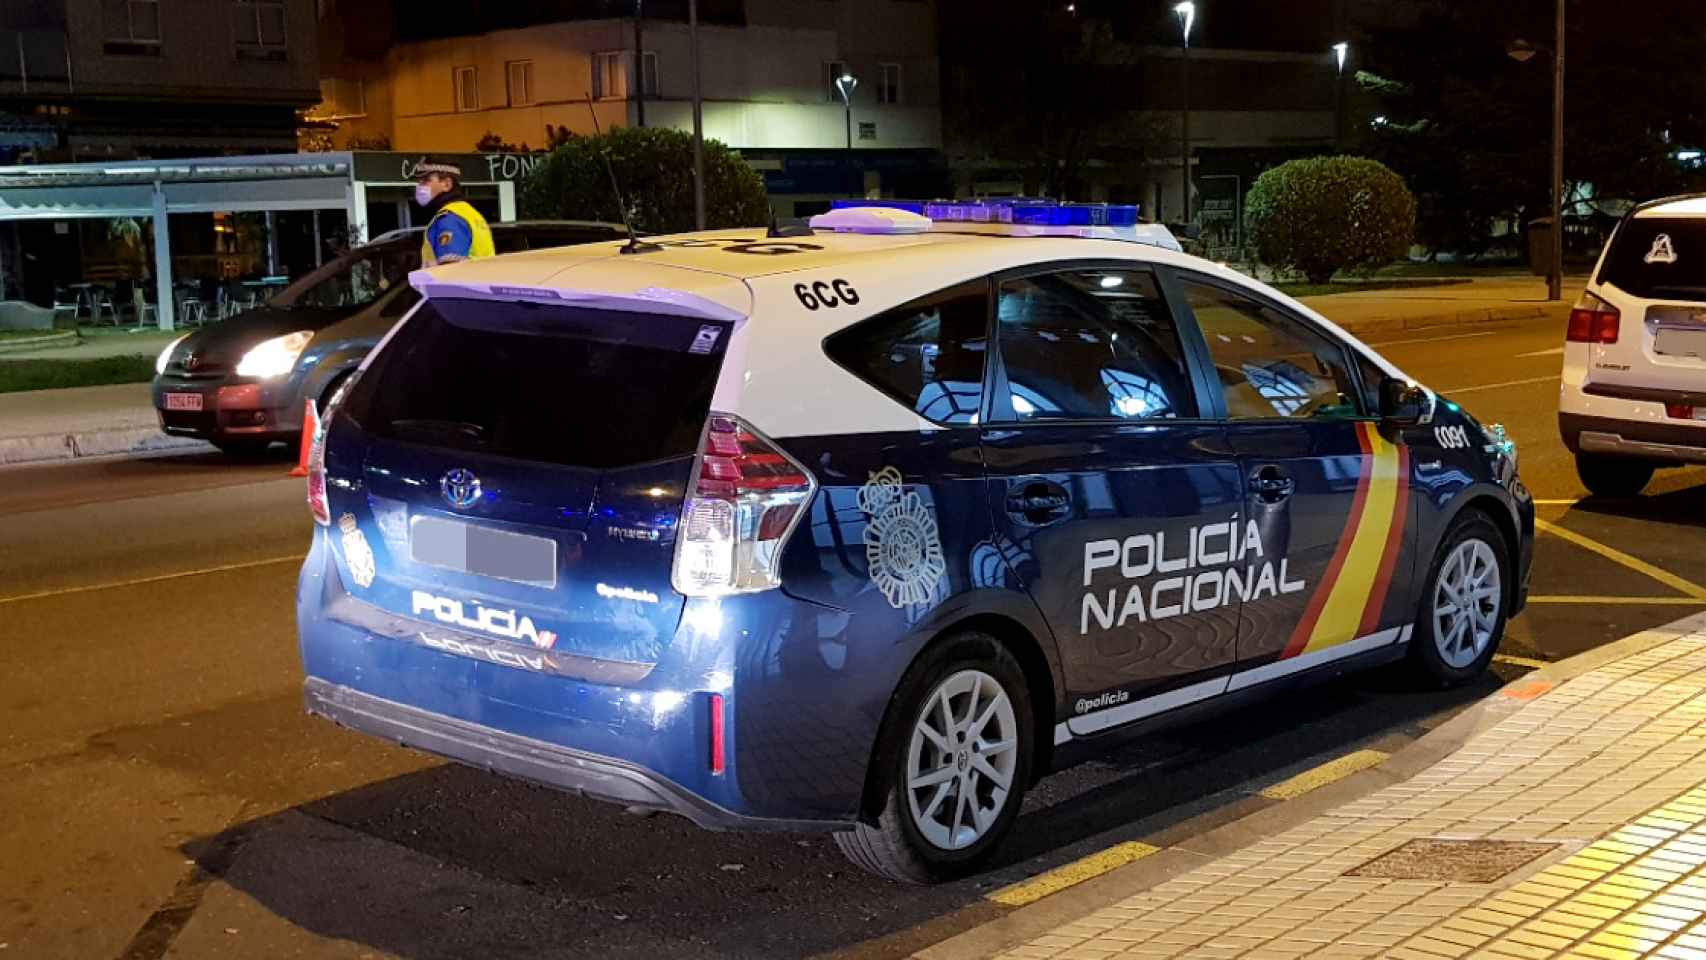 Policía Nacional de Zamora